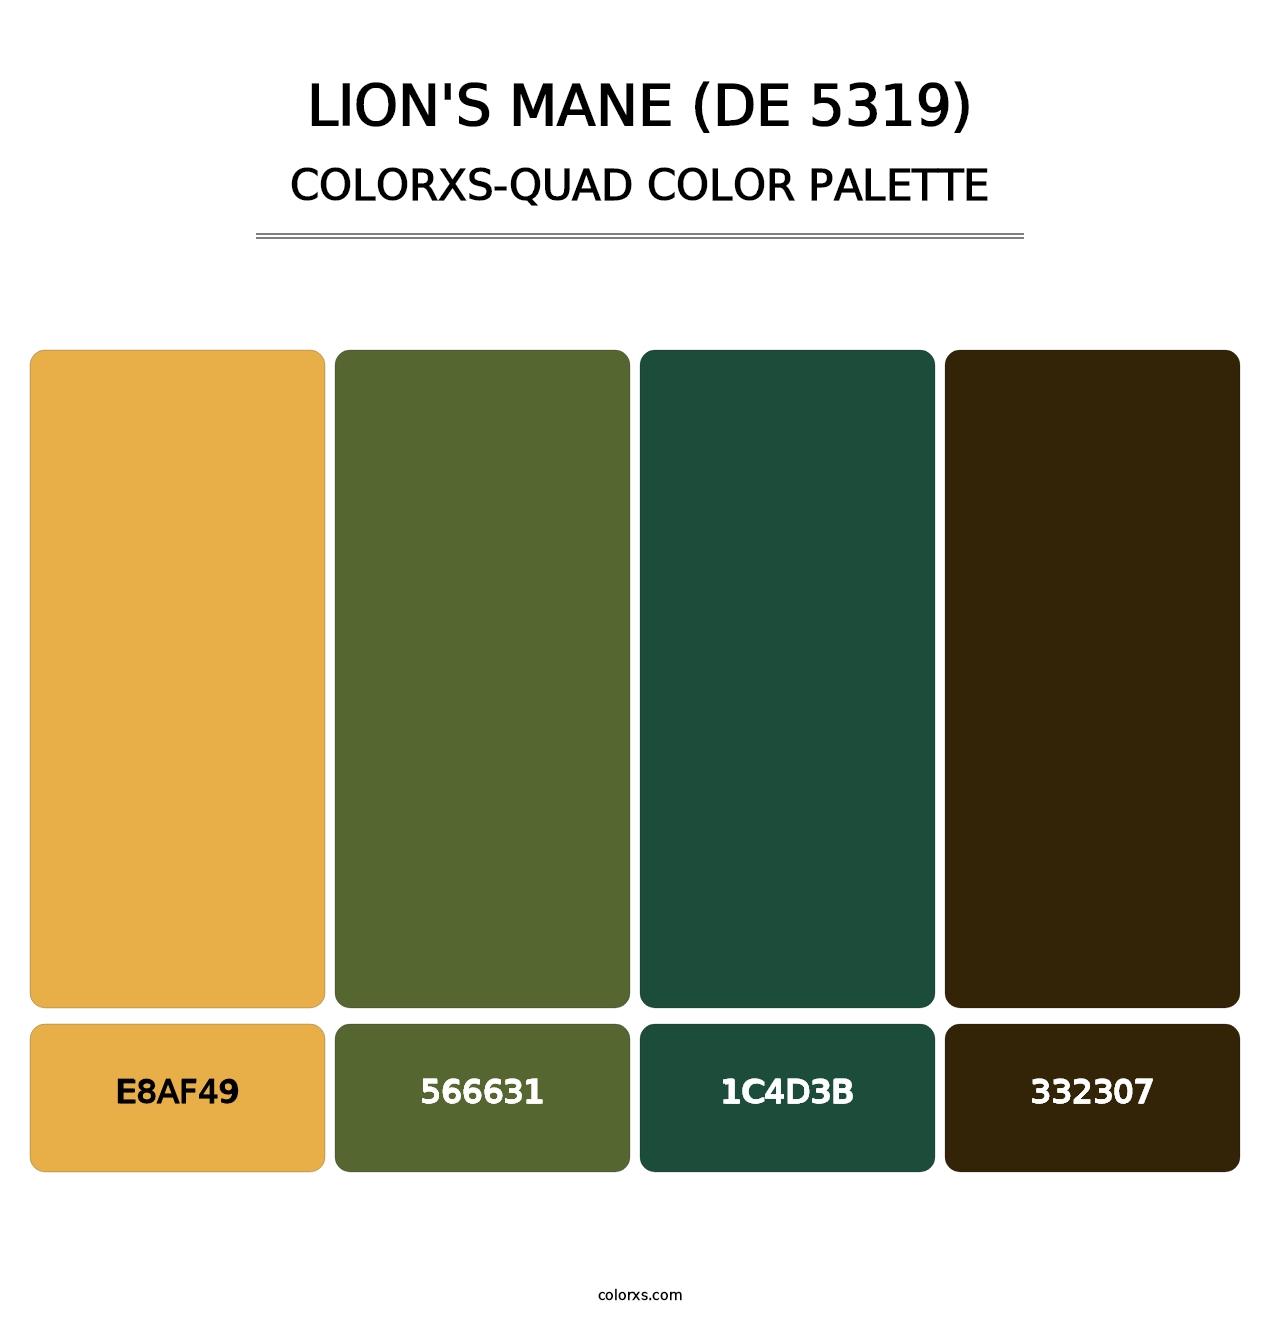 Lion's Mane (DE 5319) - Colorxs Quad Palette